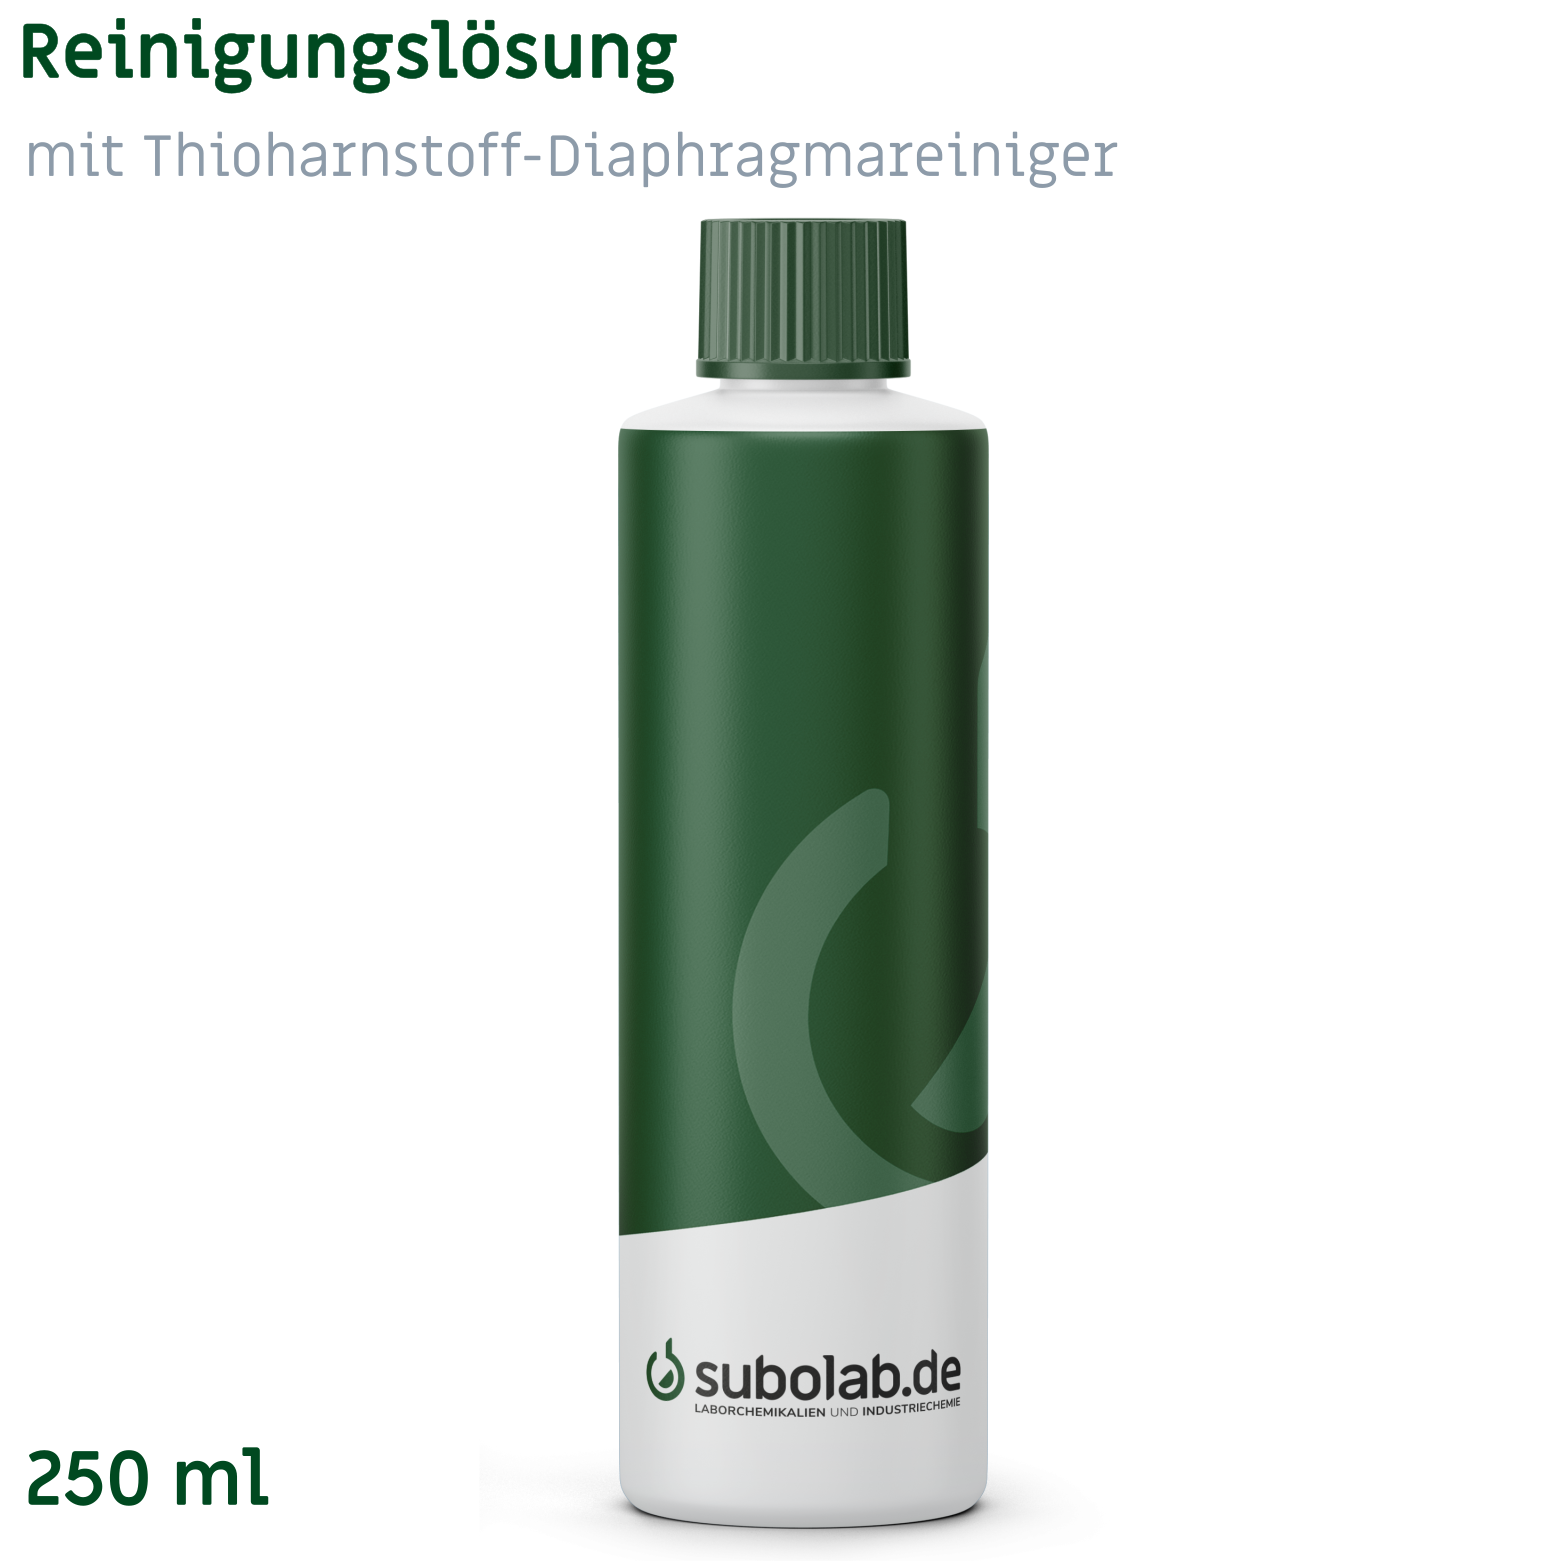 Bild von Reinigungslösung mit Thioharnstoff - Diaphragmareiniger (250 ml)